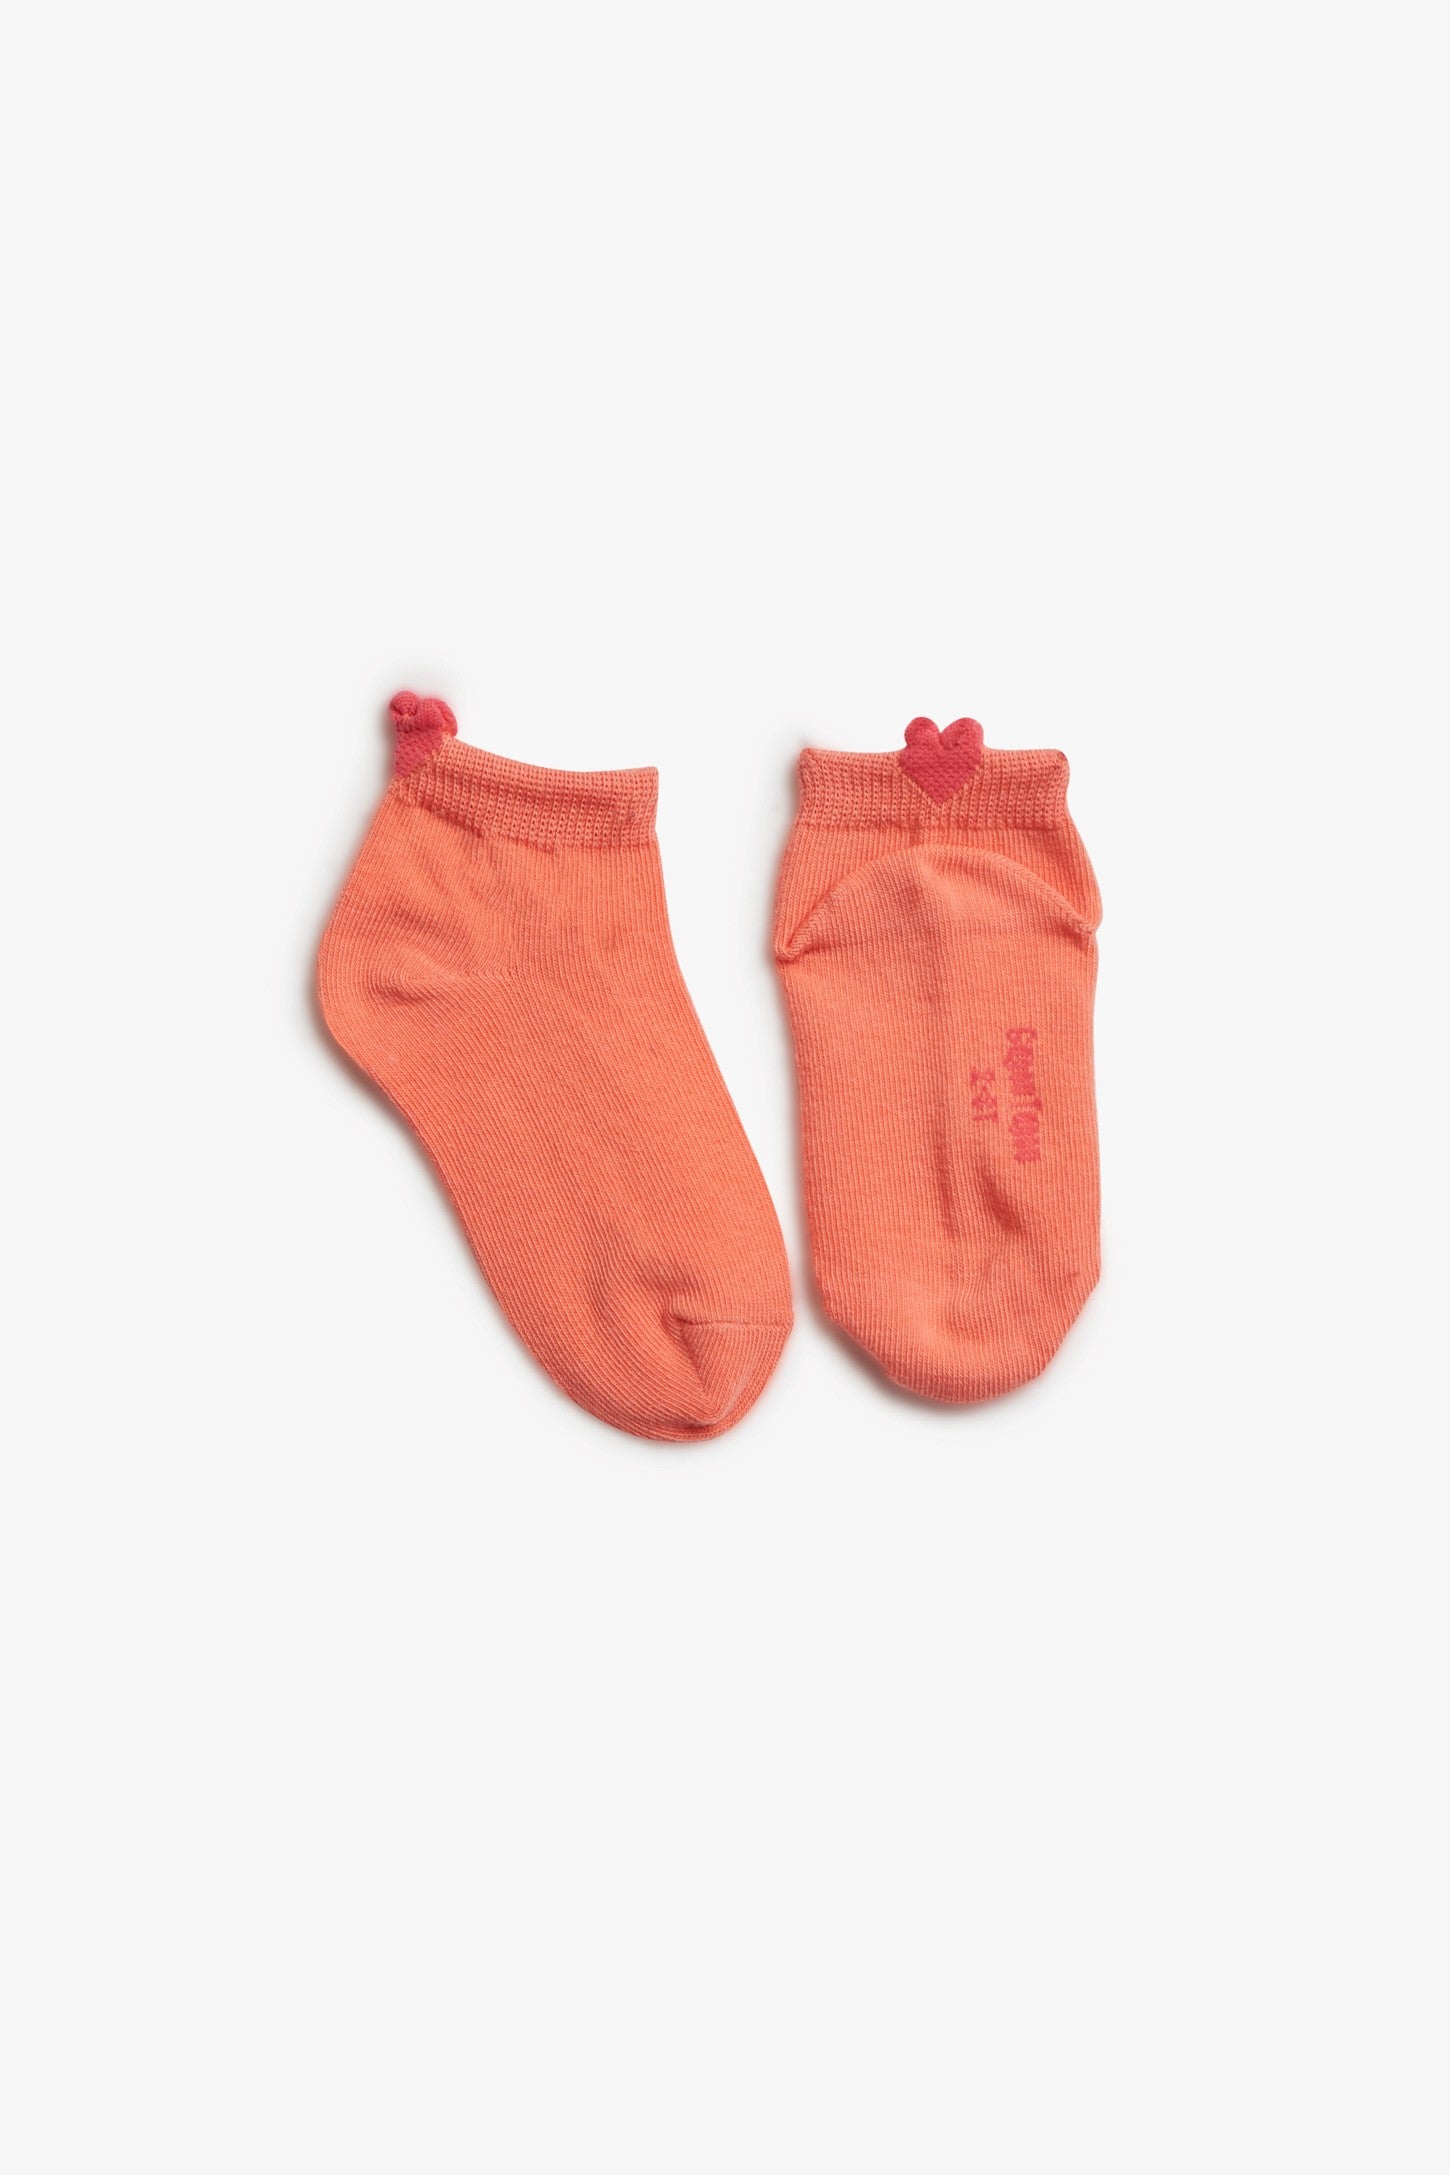 Lot de 3 paires de chaussettes avec collerette en dentelle pour bébé fille